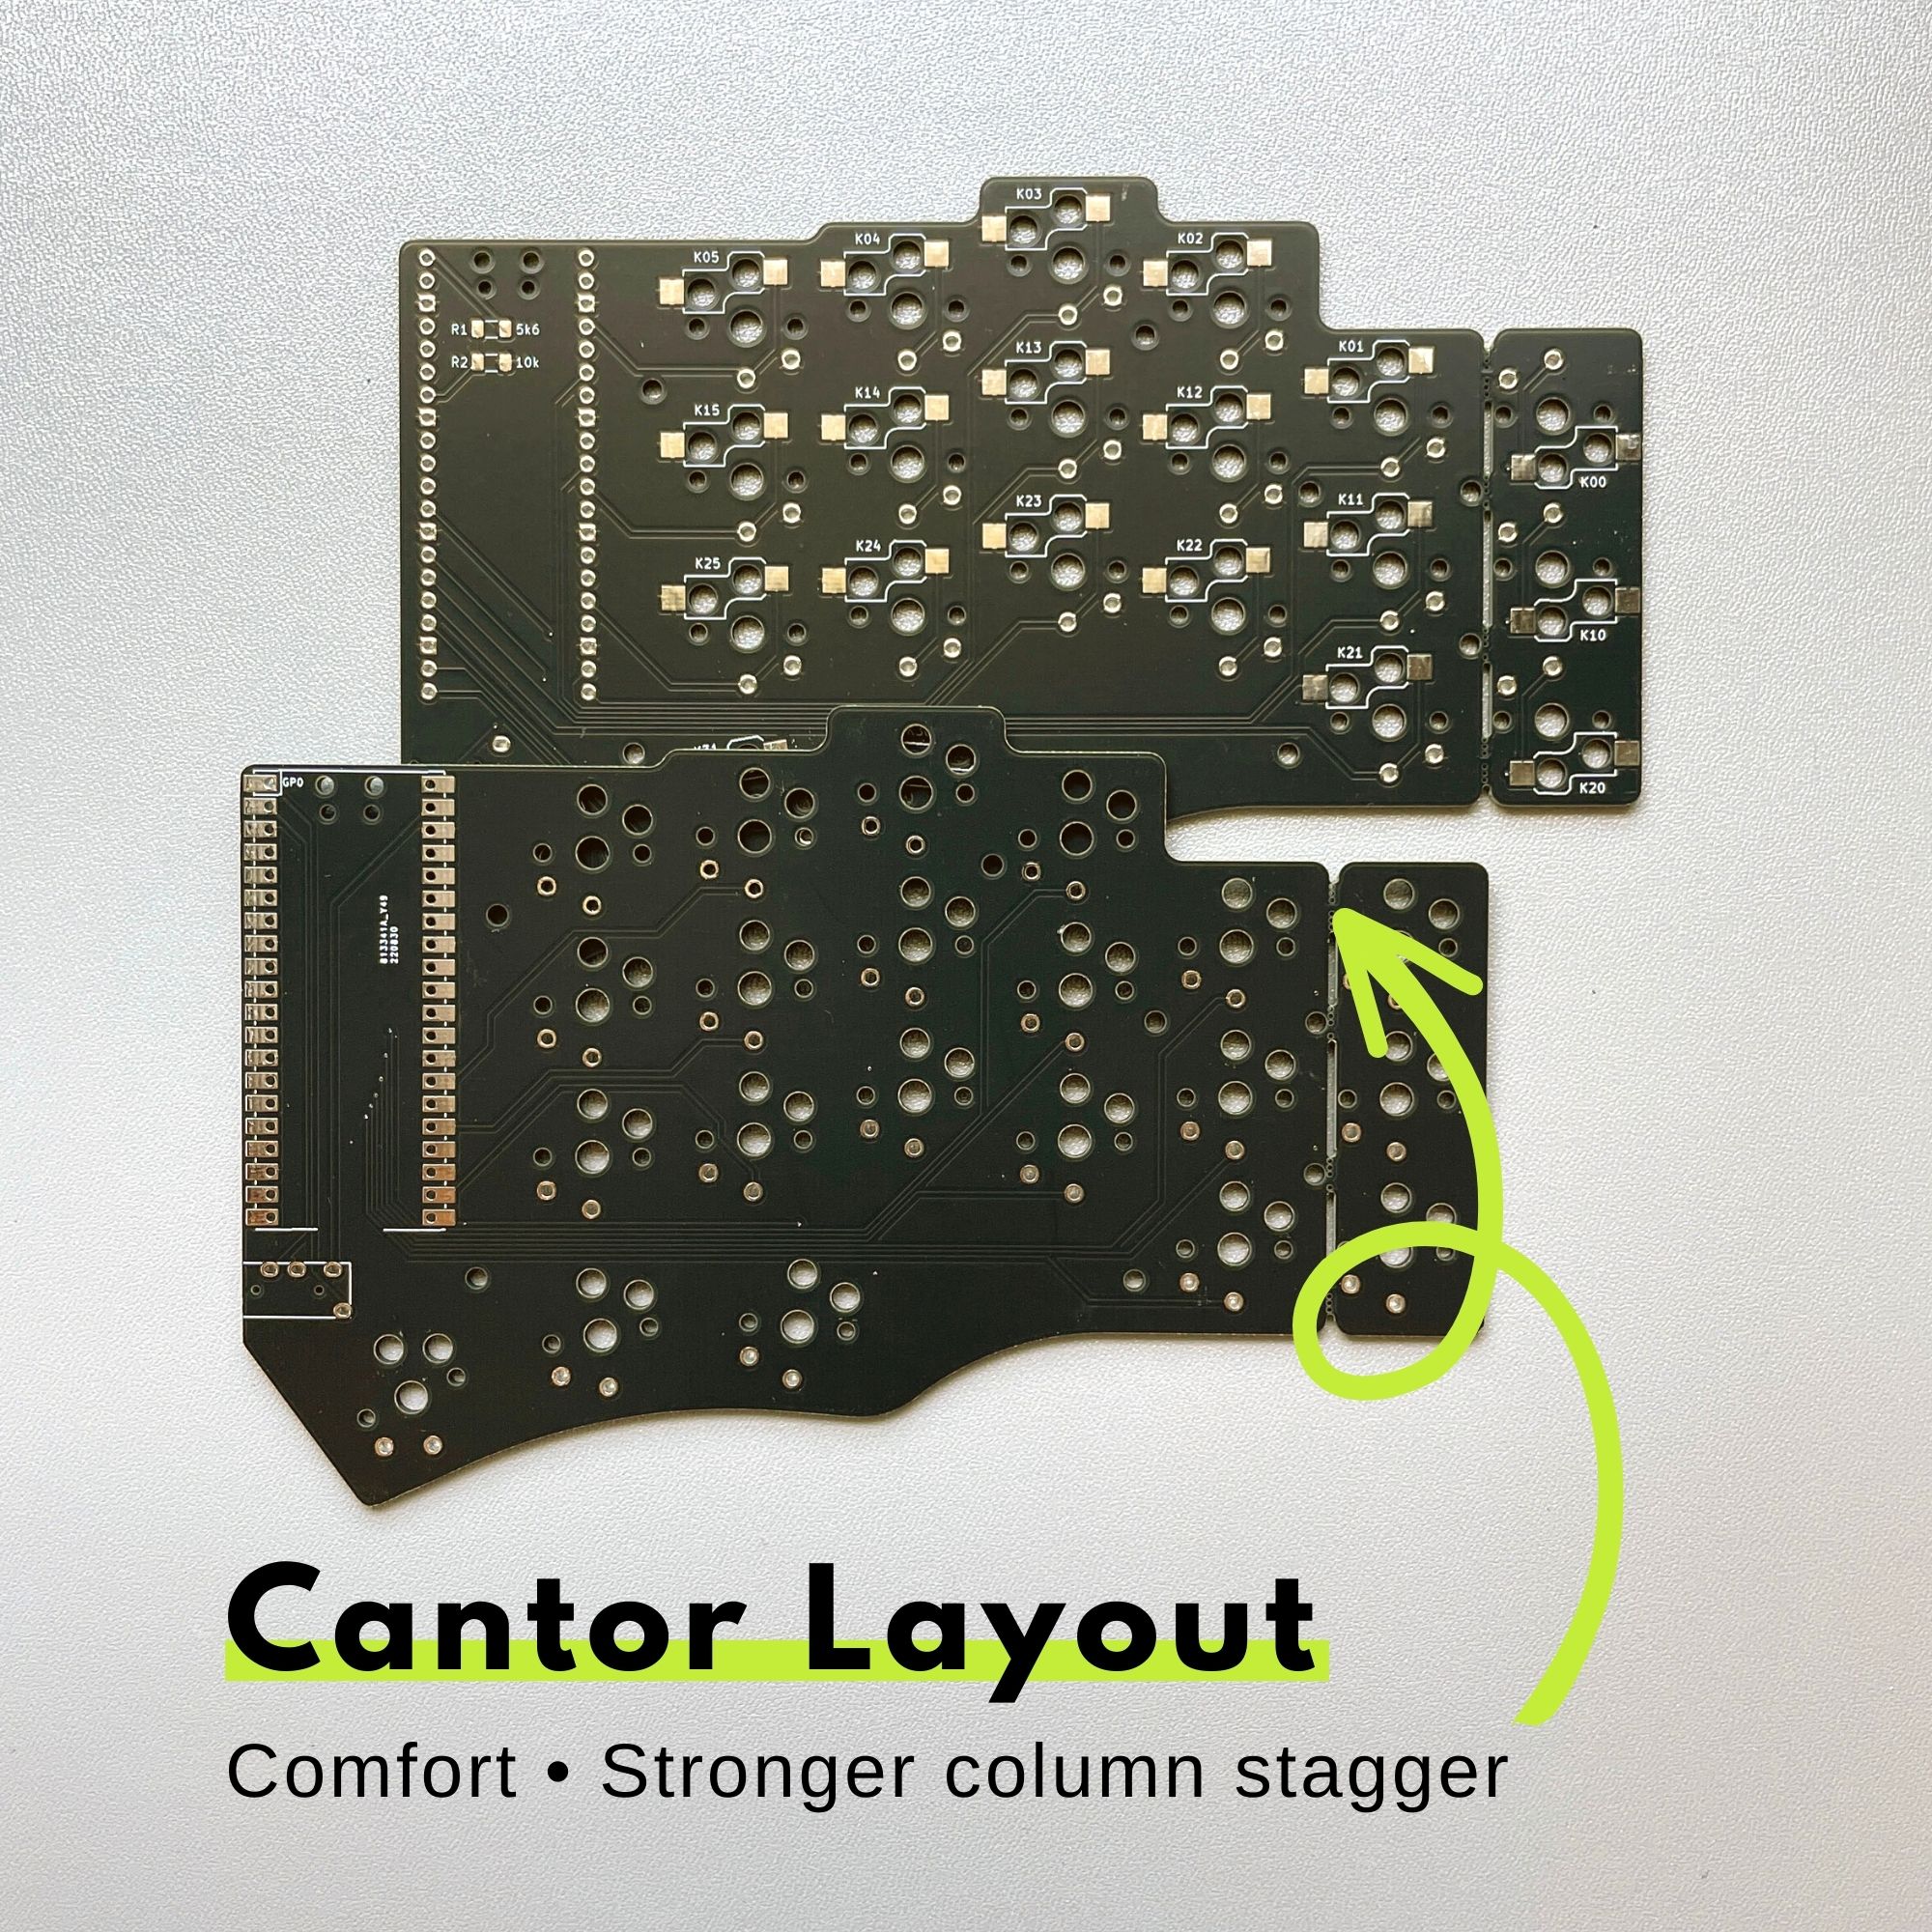 Piantor Keyboard (Cantor Layout with Hotswap) 42 Keys / 36 Keys Diodeless RP2040 Low Profile Split Keyboard DIY Kit